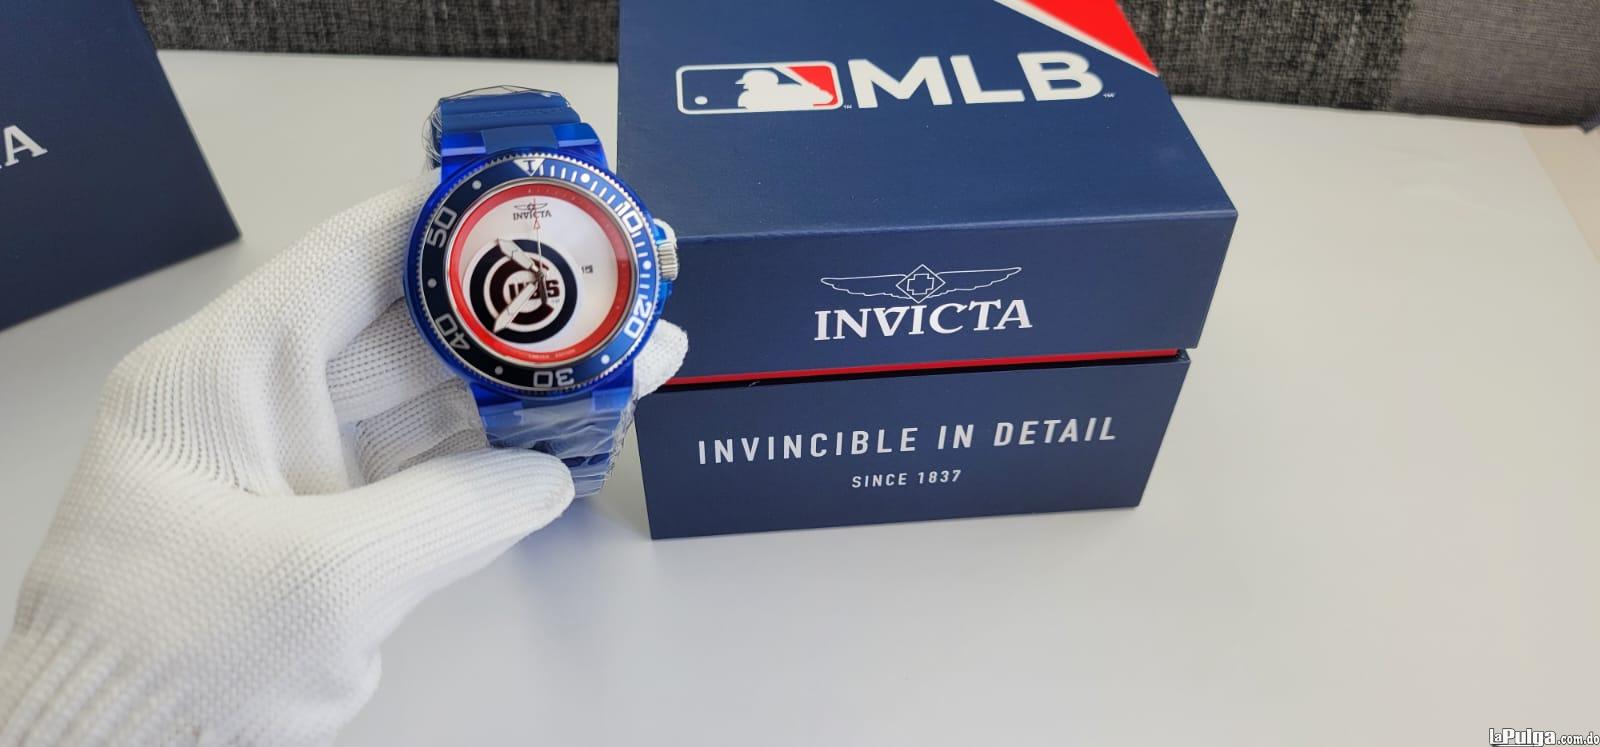 Reloj Invicta MLB Edición Limitada Chicago Cubs Foto 7155769-5.jpg